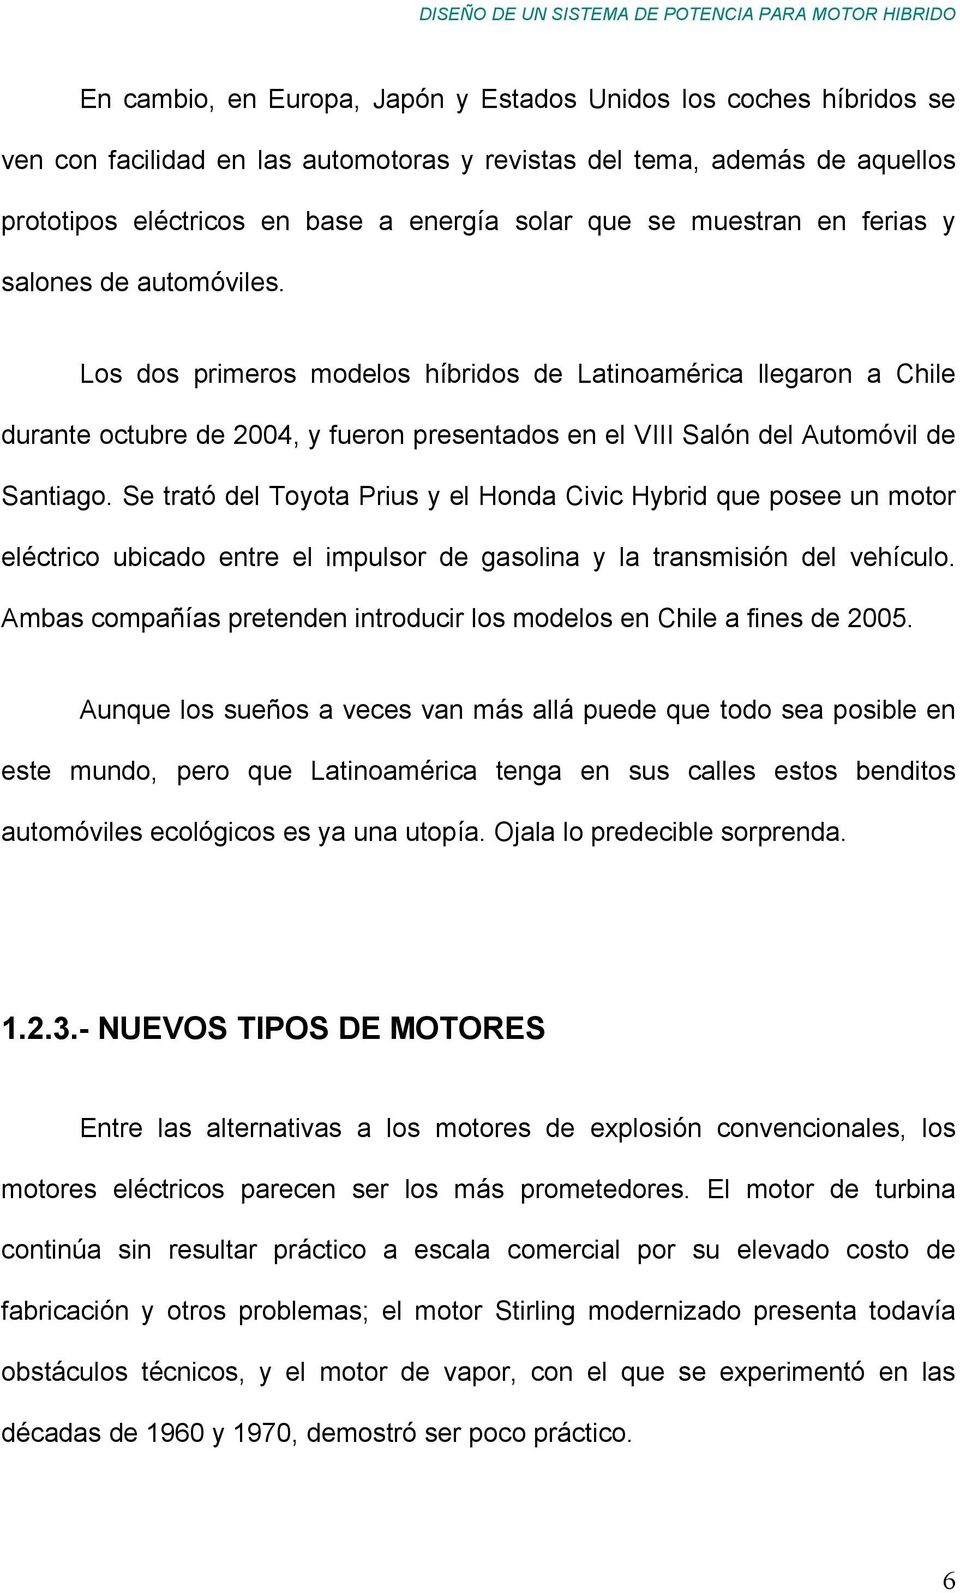 Los dos primeros modelos híbridos de Latinoamérica llegaron a Chile durante octubre de 2004, y fueron presentados en el VIII Salón del Automóvil de Santiago.